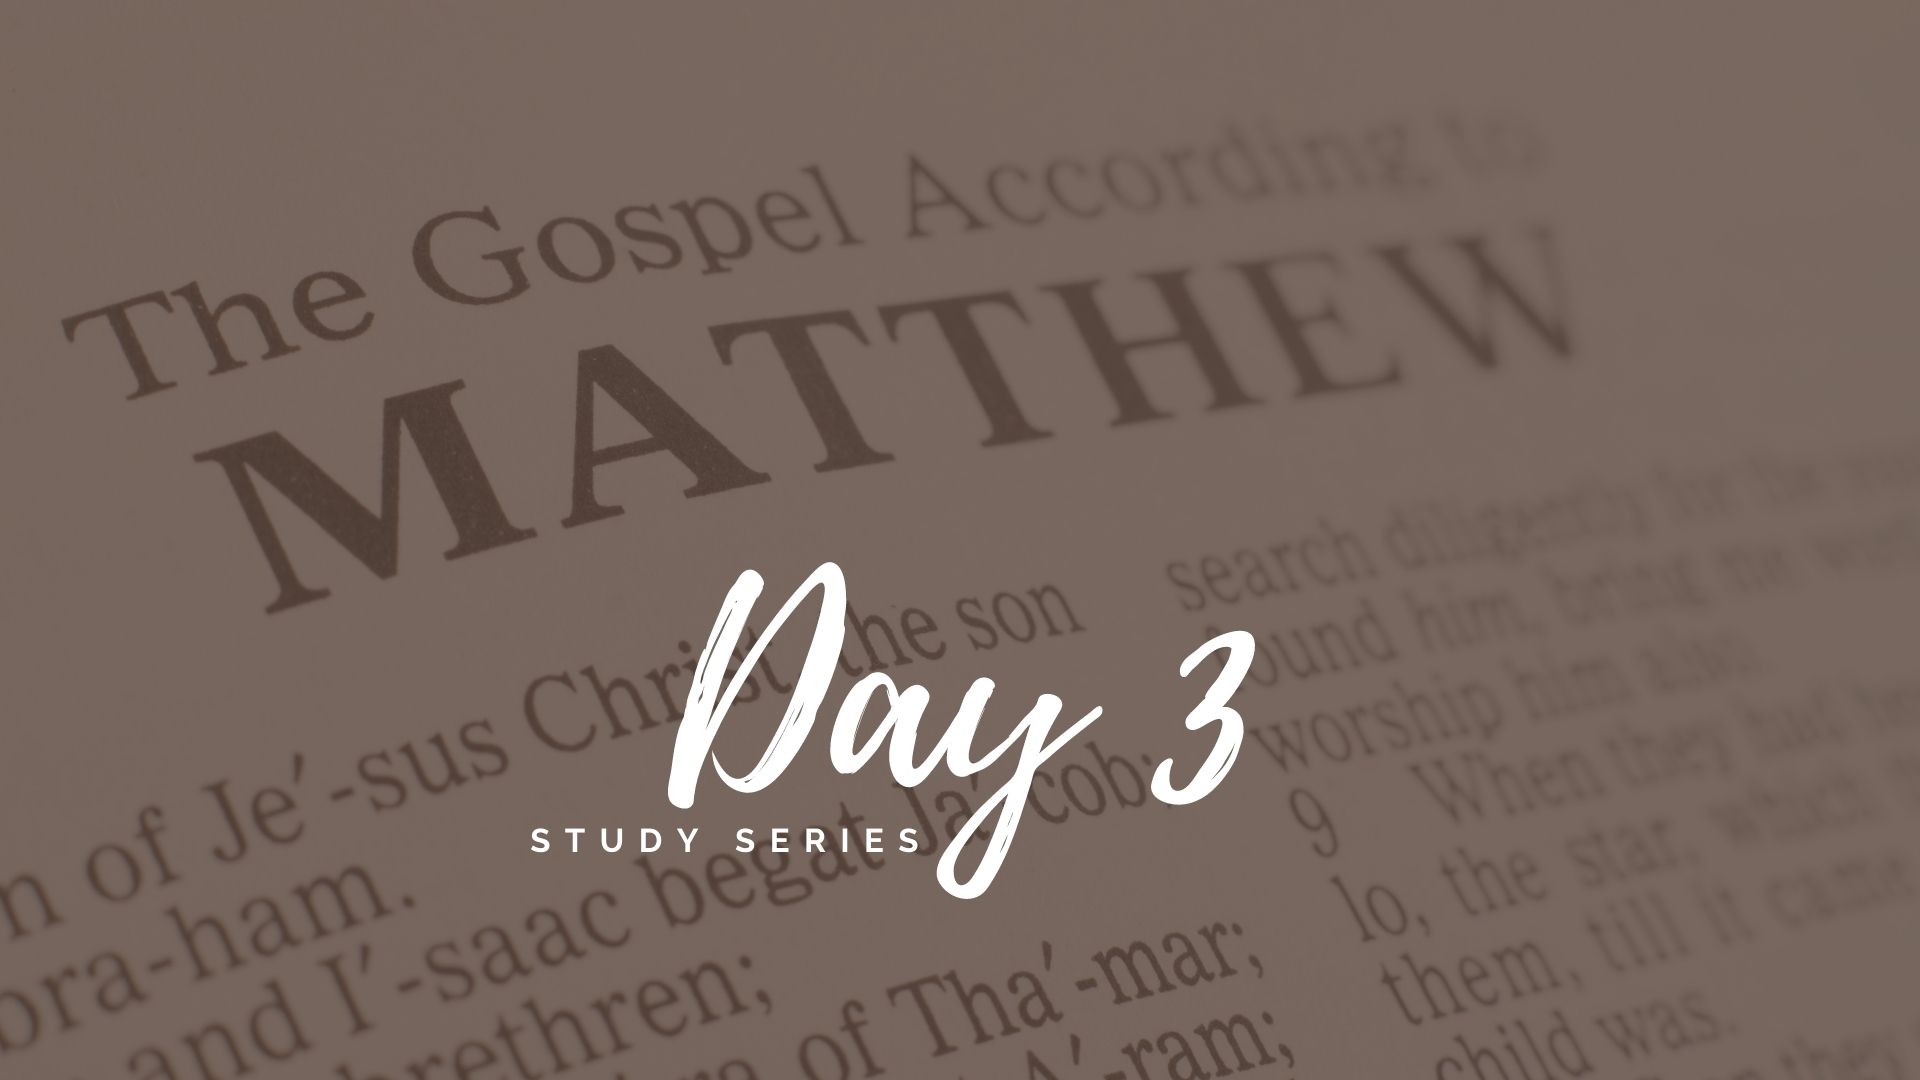 The Gospel of Matthew Day 3